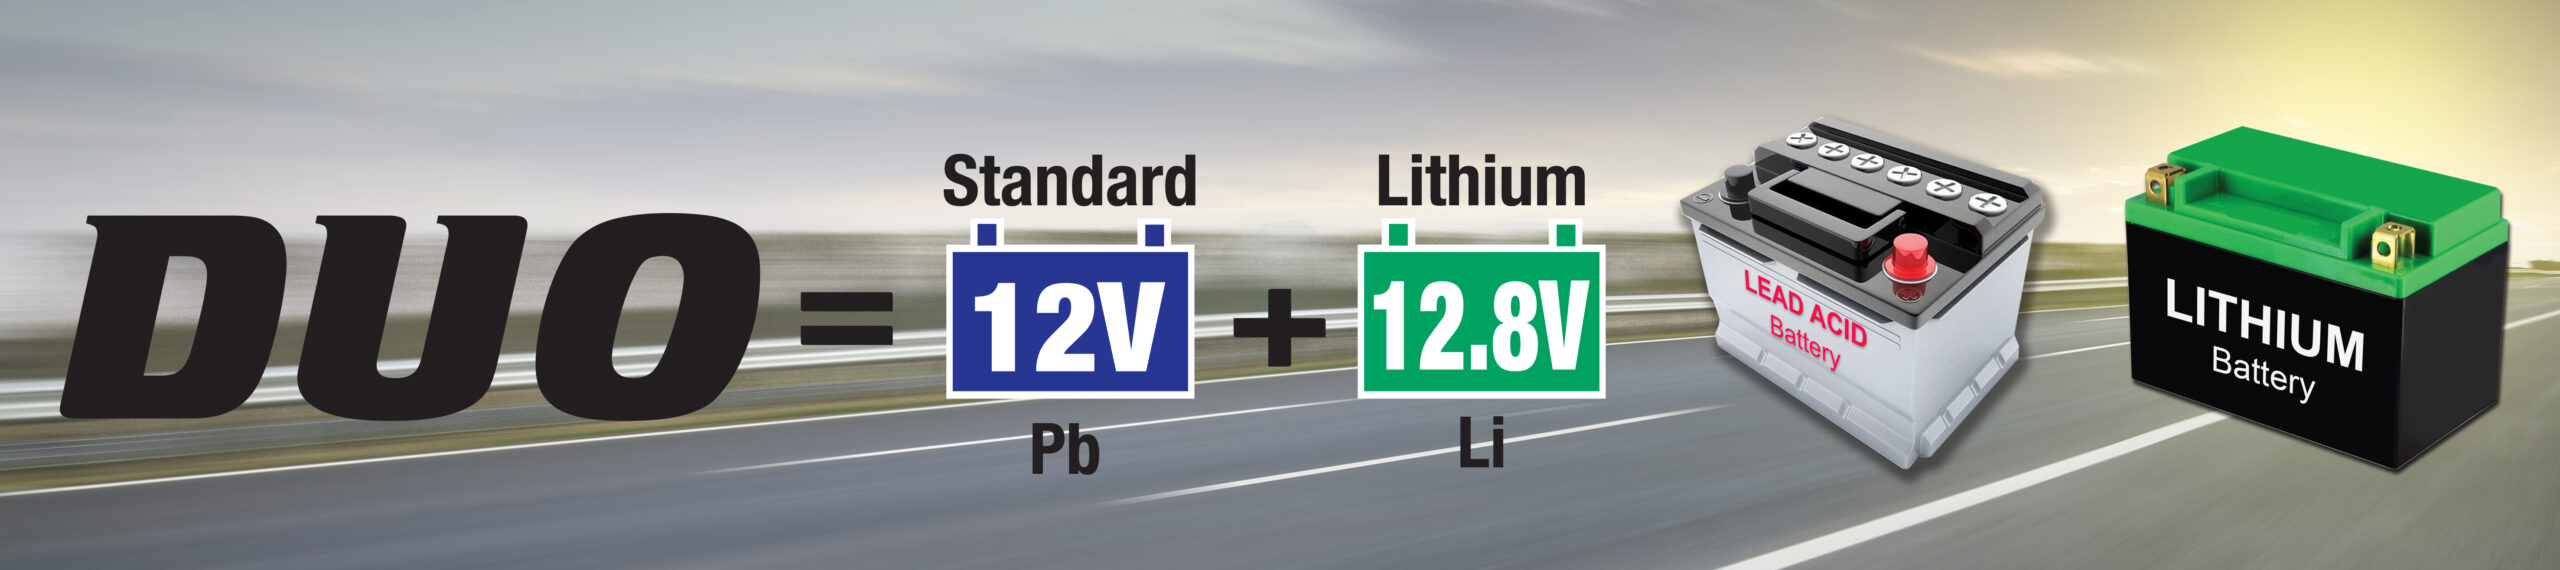 DUO betekent standaard 12V Pb en Lithium 12.8V Li